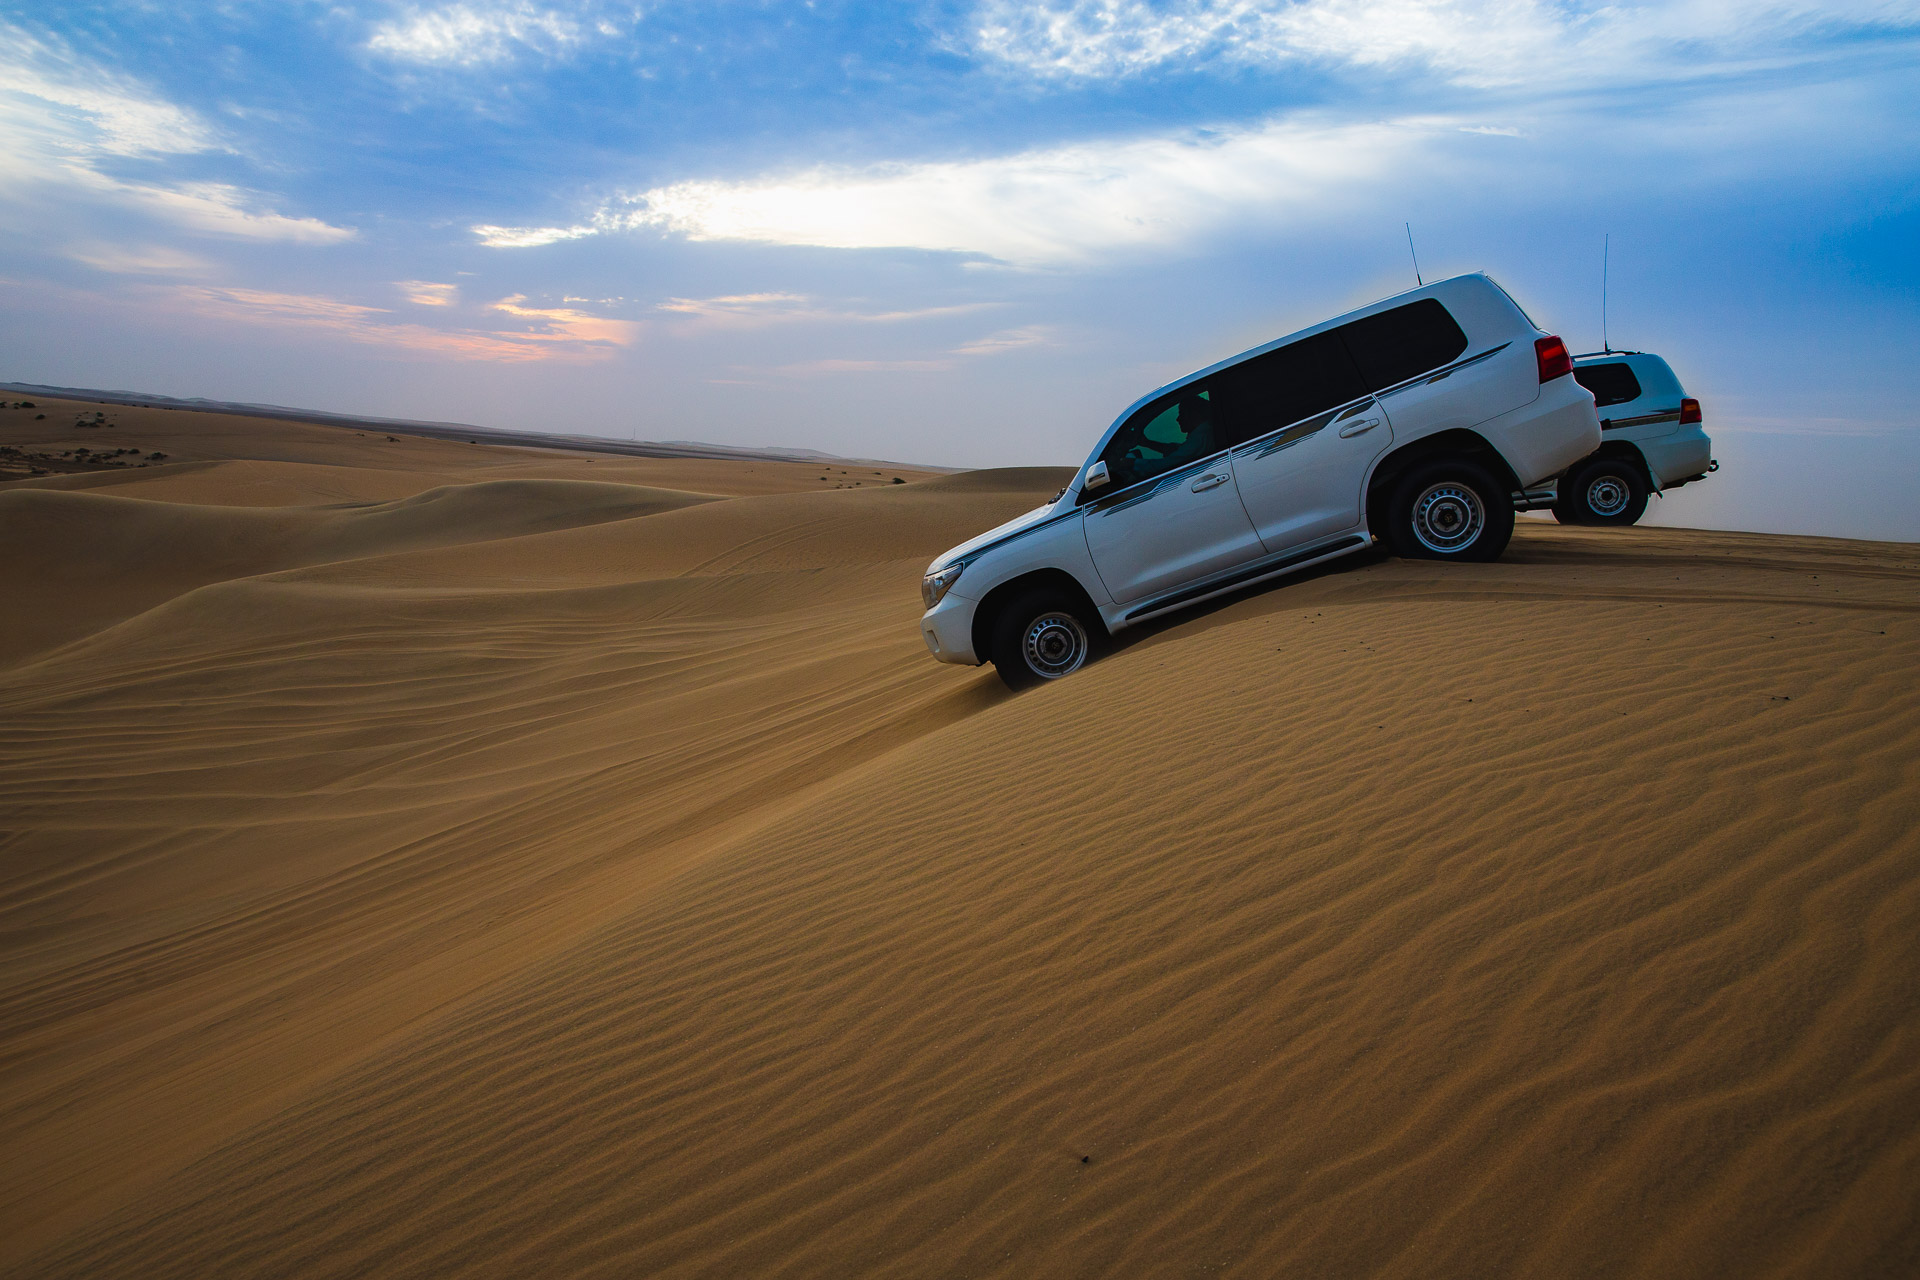 desert tour in qatar